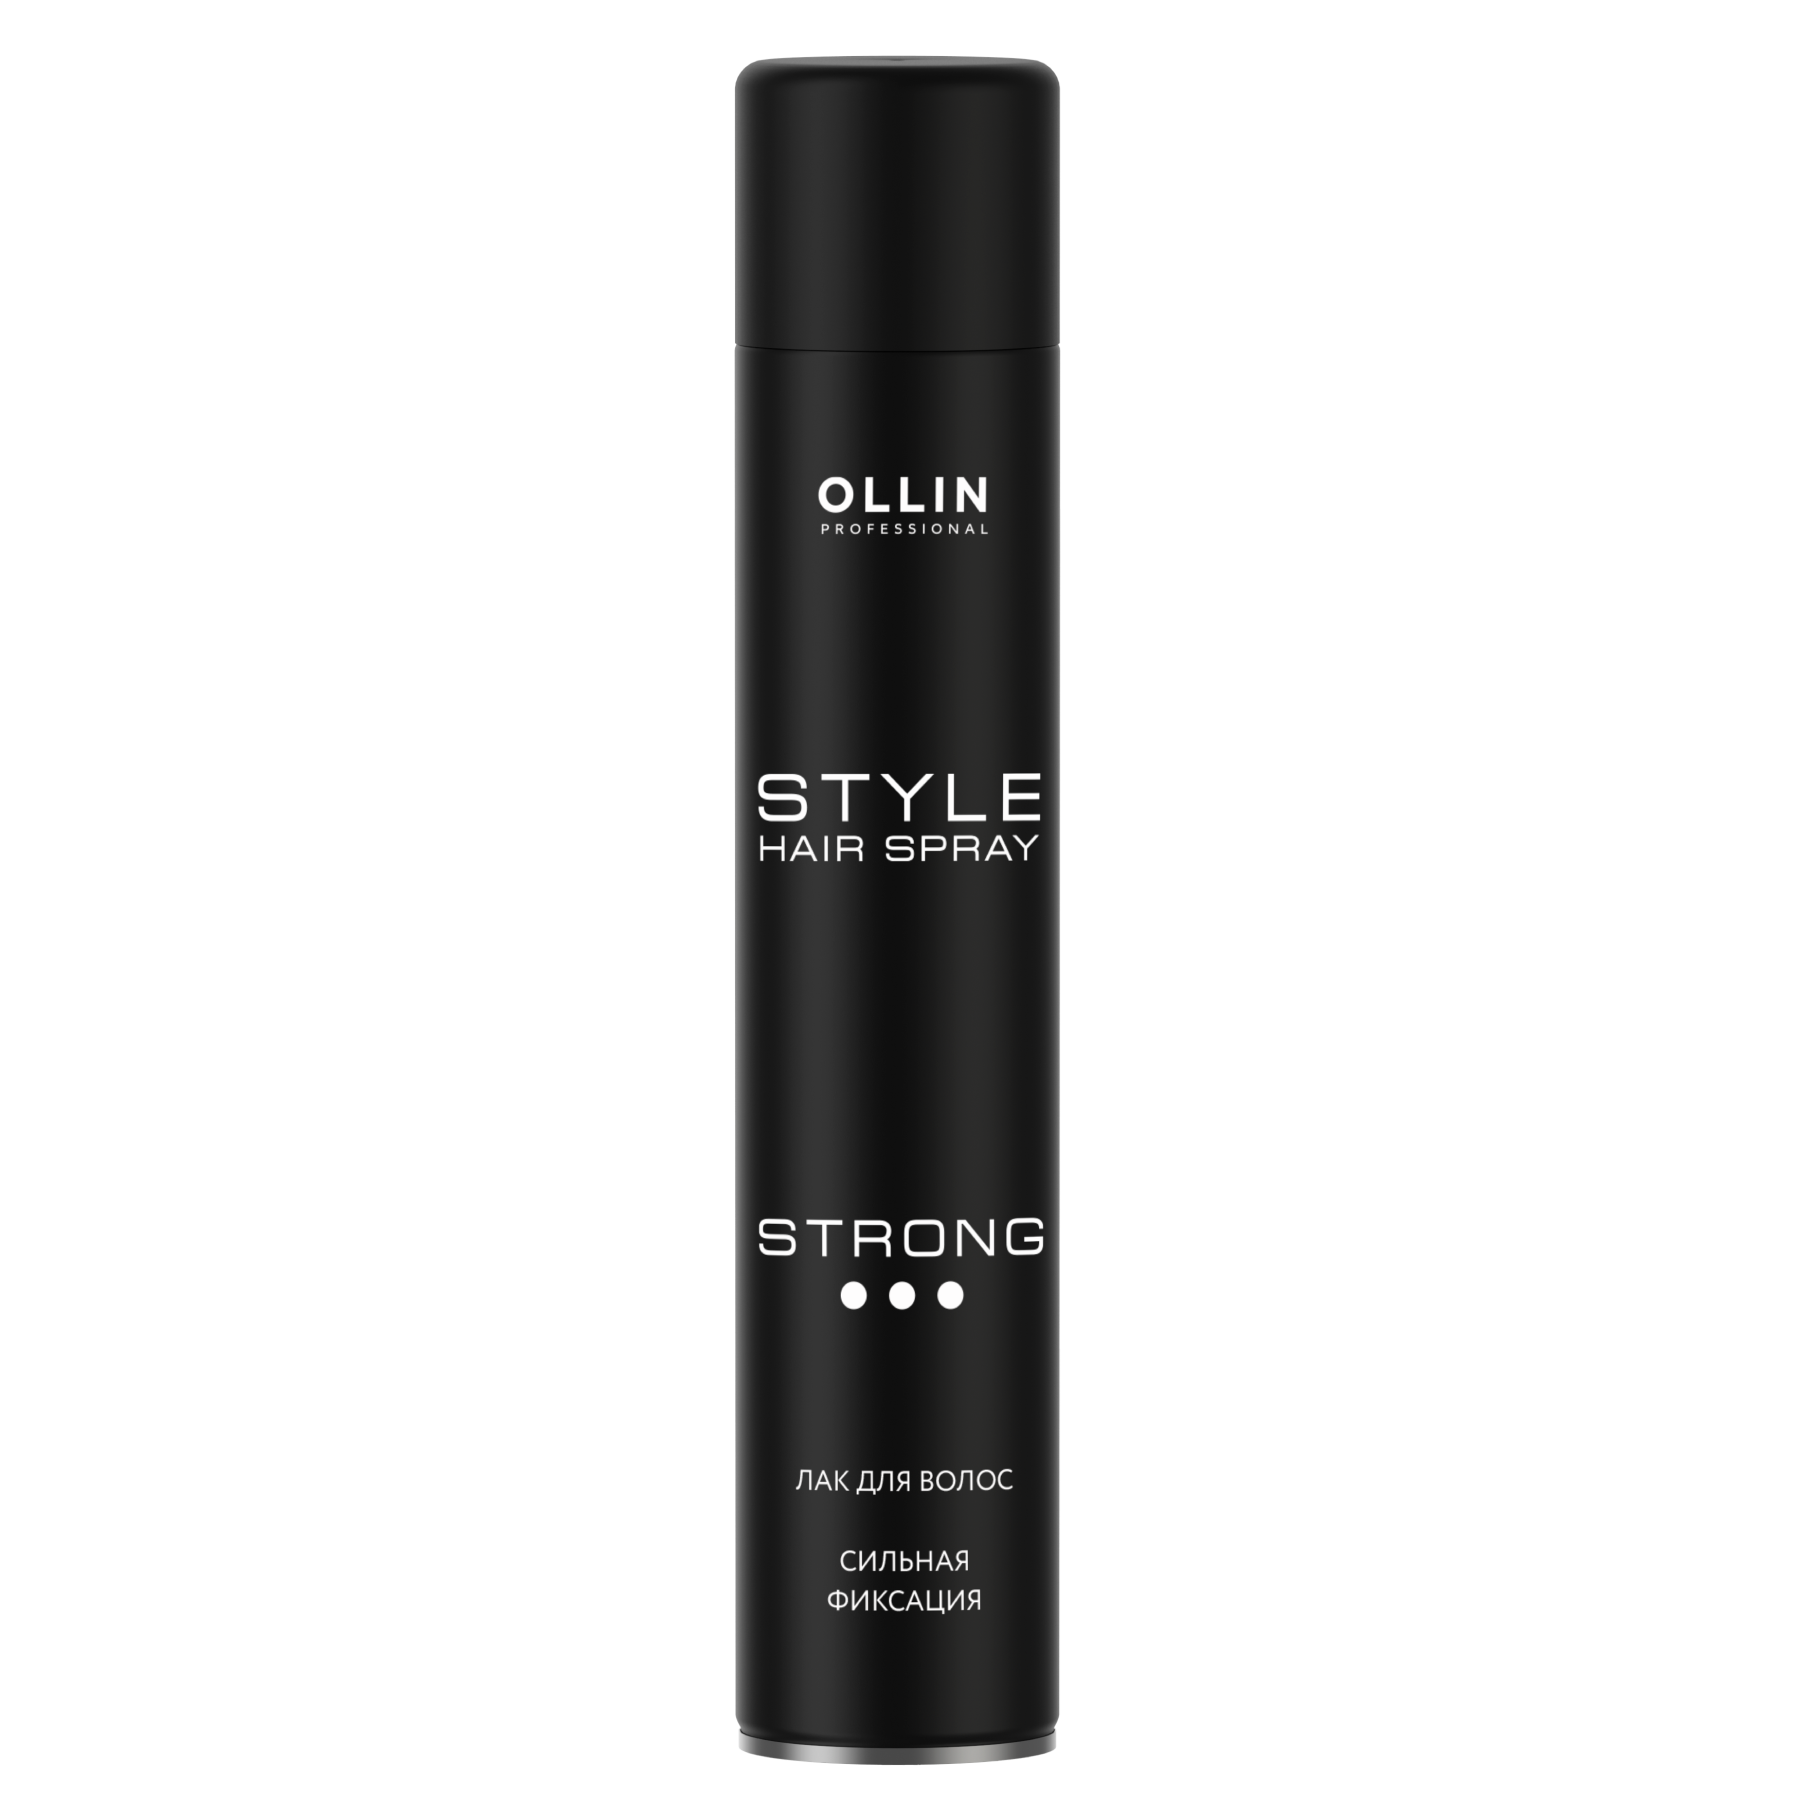 Купить Лак для волос OLLIN Style сильной фиксации, 500 мл, Ollin Professional